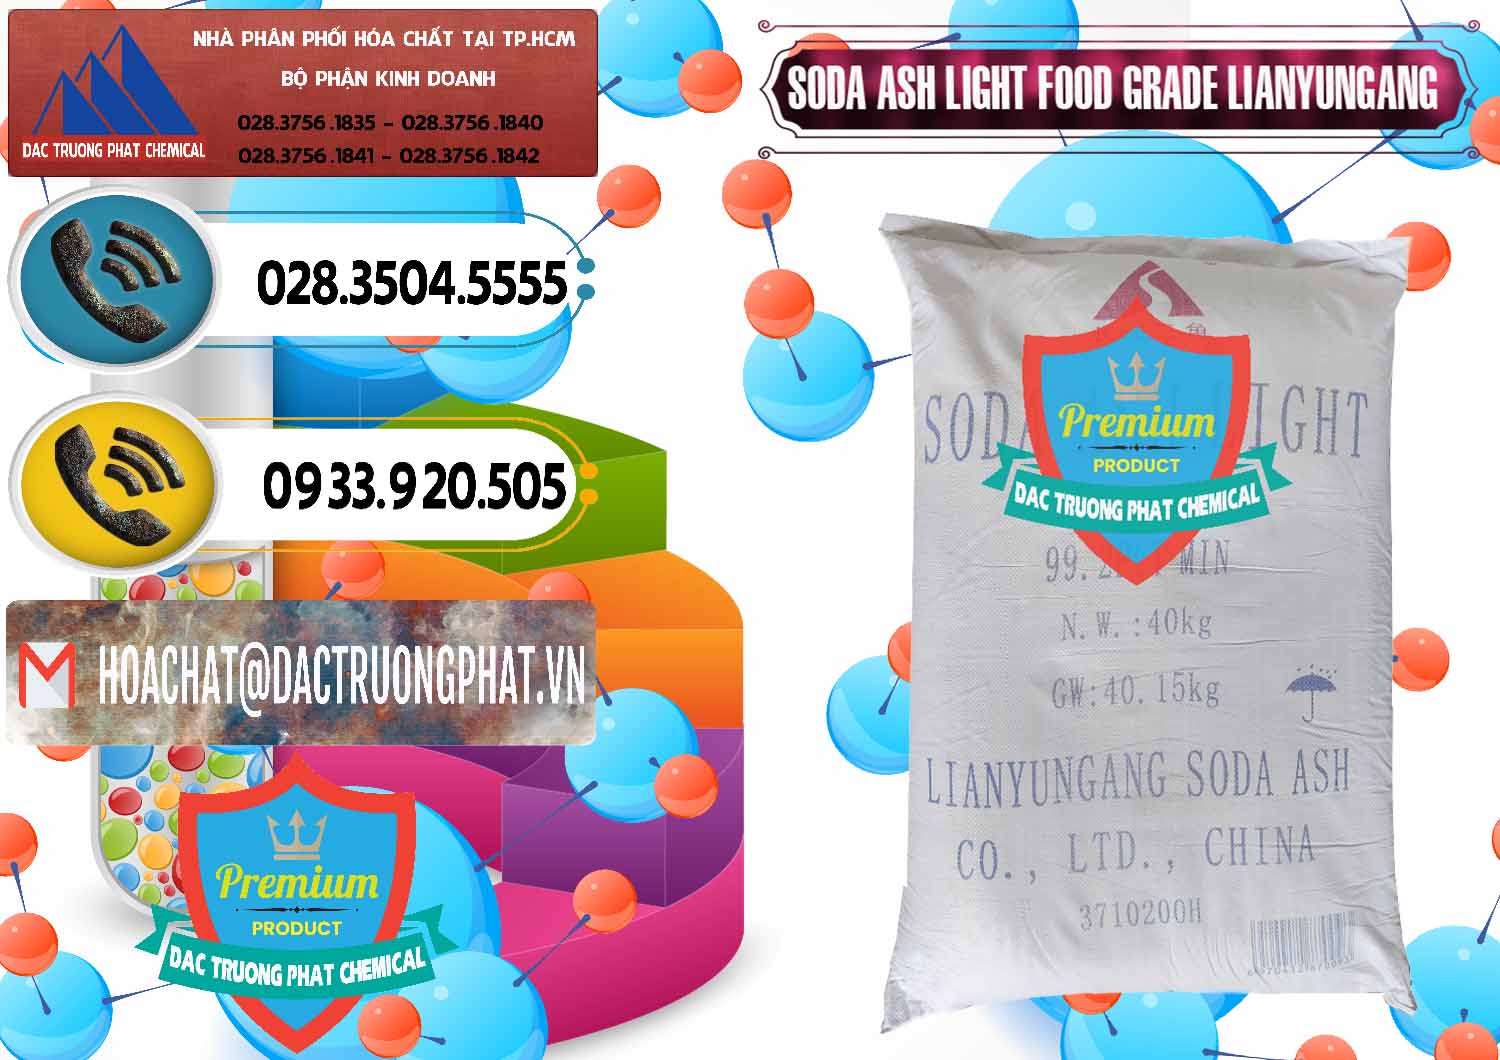 Nơi bán và cung ứng Soda Ash Light - NA2CO3 Food Grade Lianyungang Trung Quốc - 0222 - Cty kinh doanh & phân phối hóa chất tại TP.HCM - hoachatdetnhuom.vn